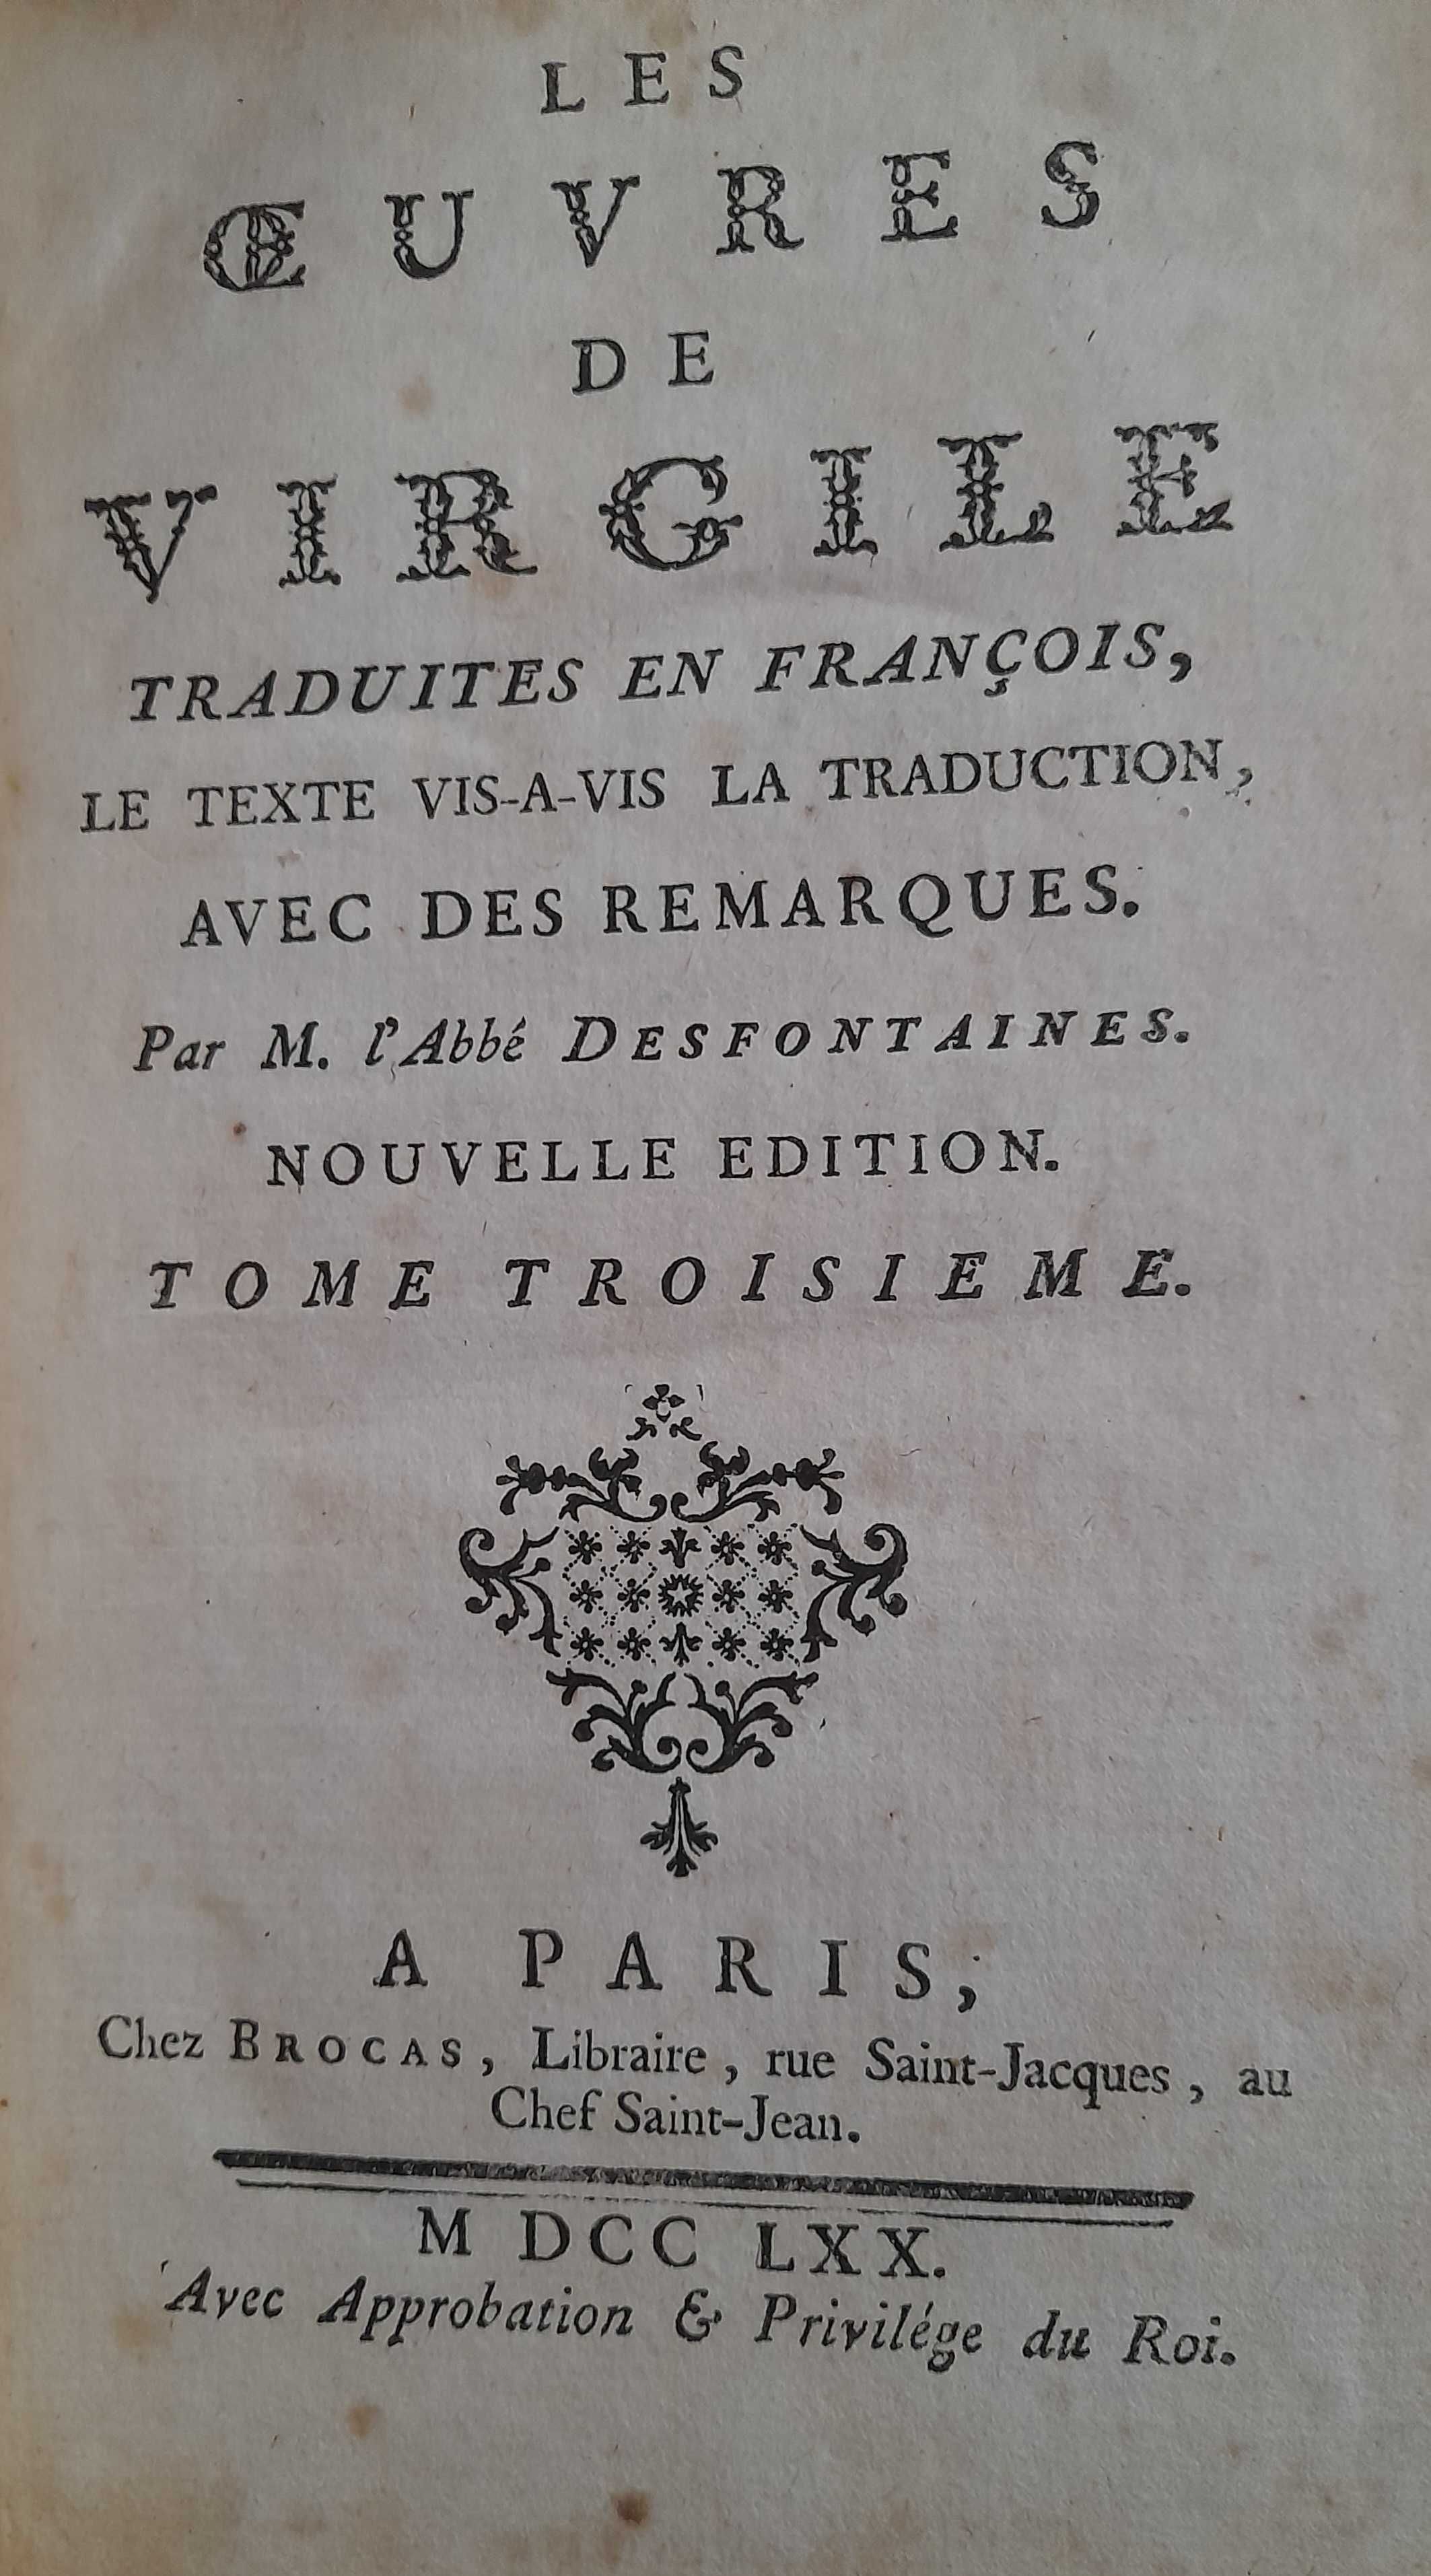 Les oeuvres de Virgil en latin et en francois, 1769.